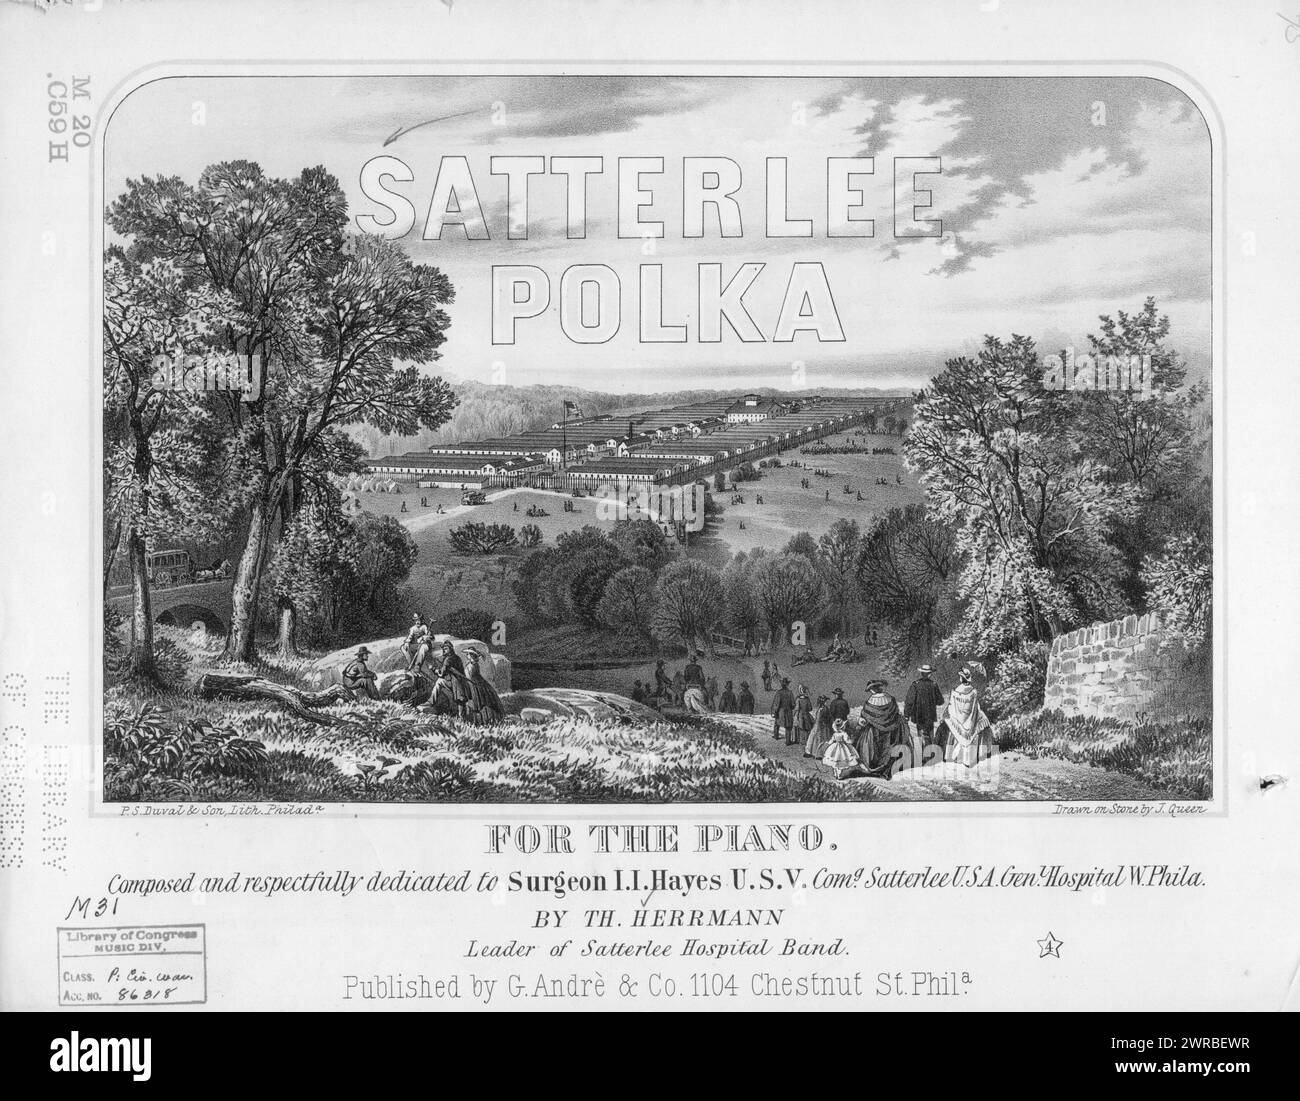 Satterlee Polka, Herrmann, th. (compositeur), G. Andre & Co, Philadelphie, 1864., États-Unis, histoire, guerre civile, 1861-1865, chansons et musique Banque D'Images